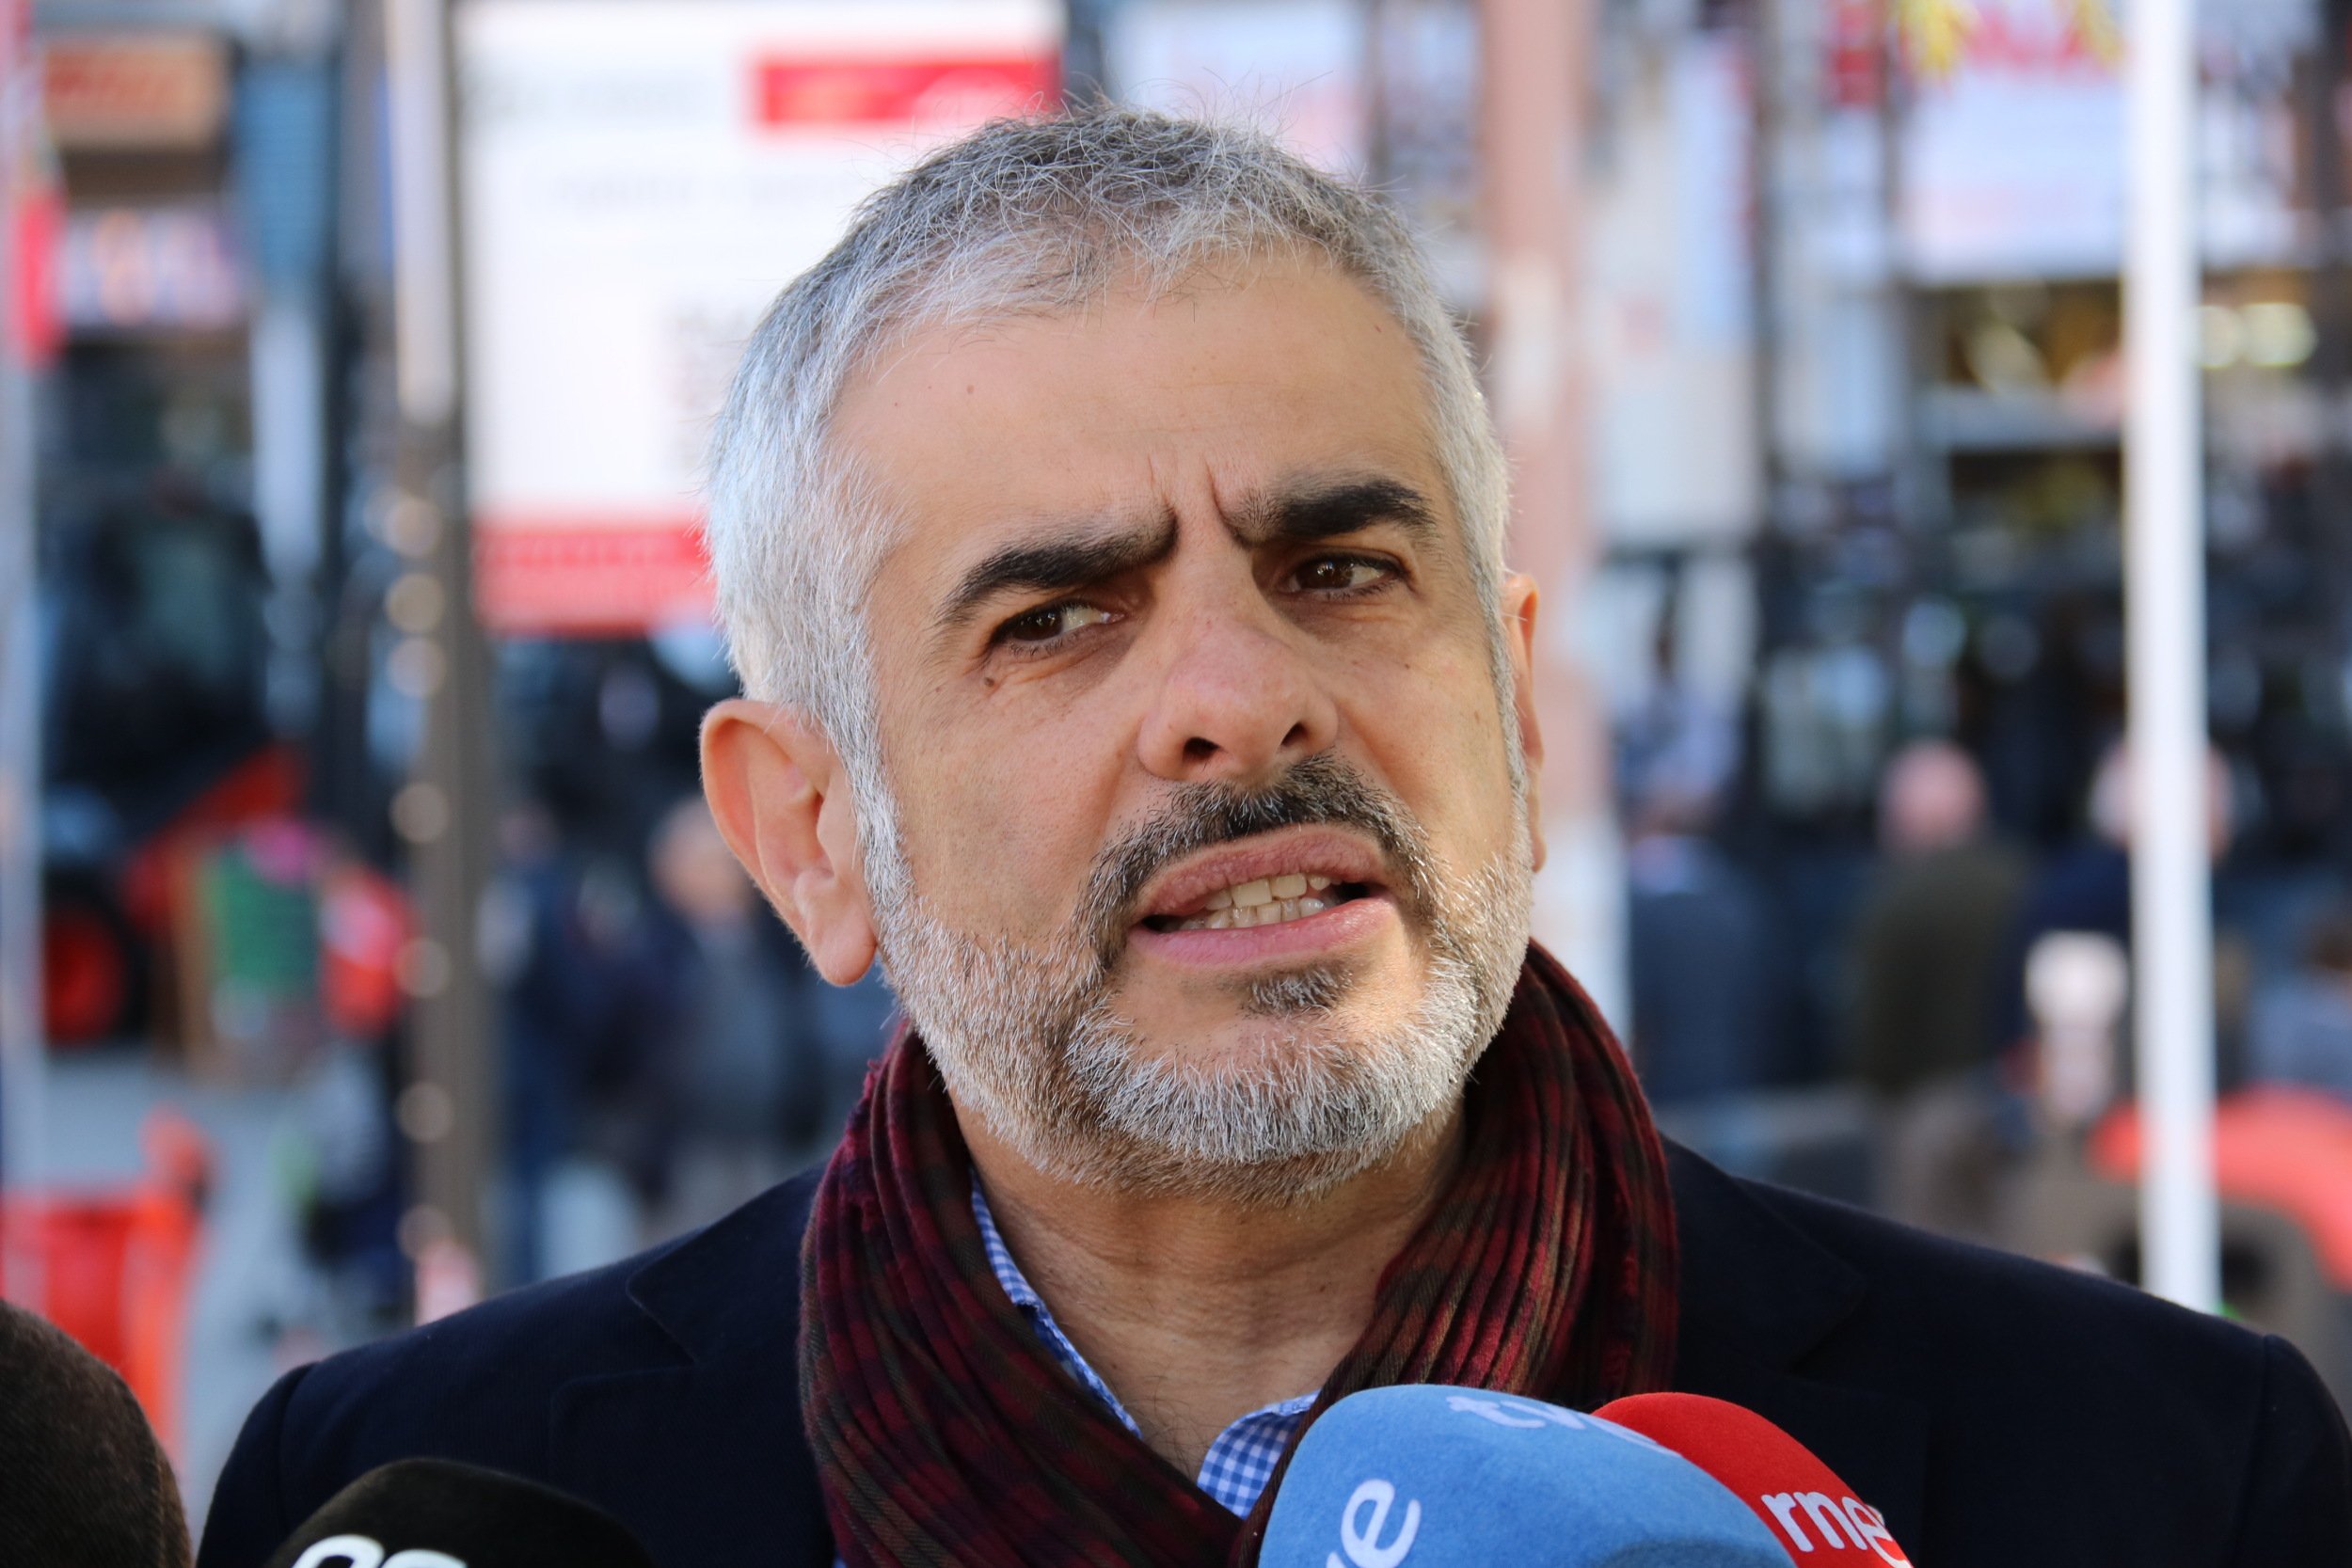 Carrizosa: "Ara haurem de buscar Colau a les manifestacions separatistes"